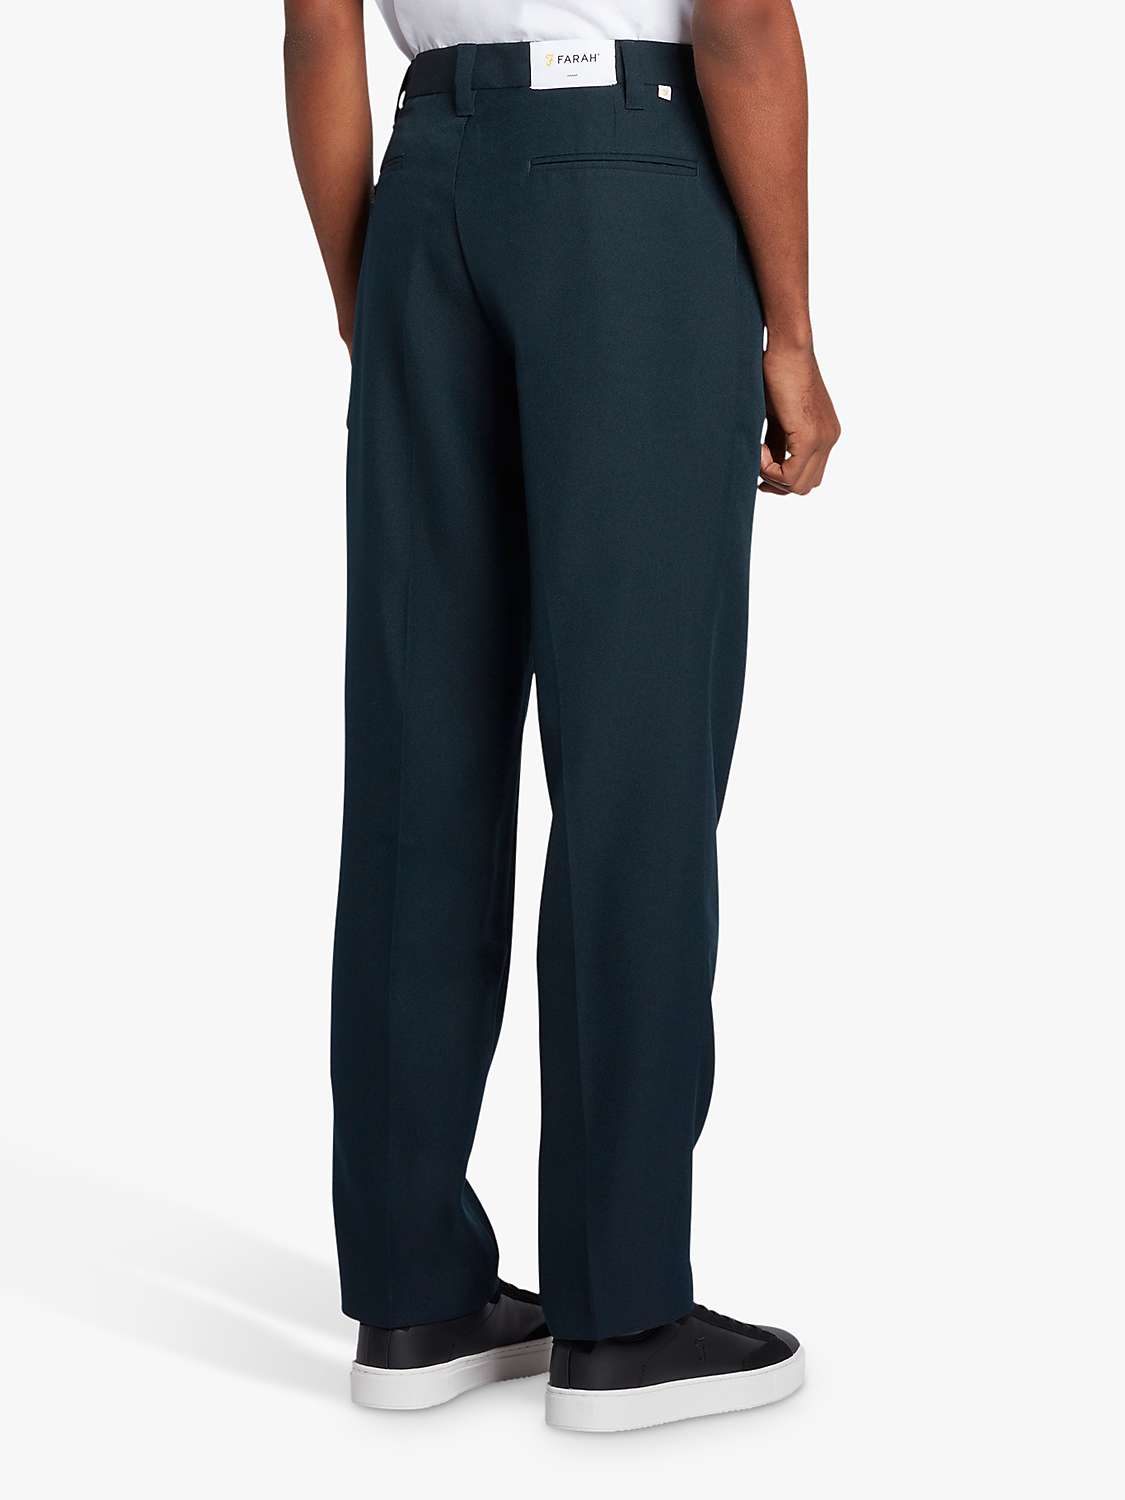 Buy Farah Ladbroke Hopsack Straight Fit Trousers, 412 True Navy Online at johnlewis.com